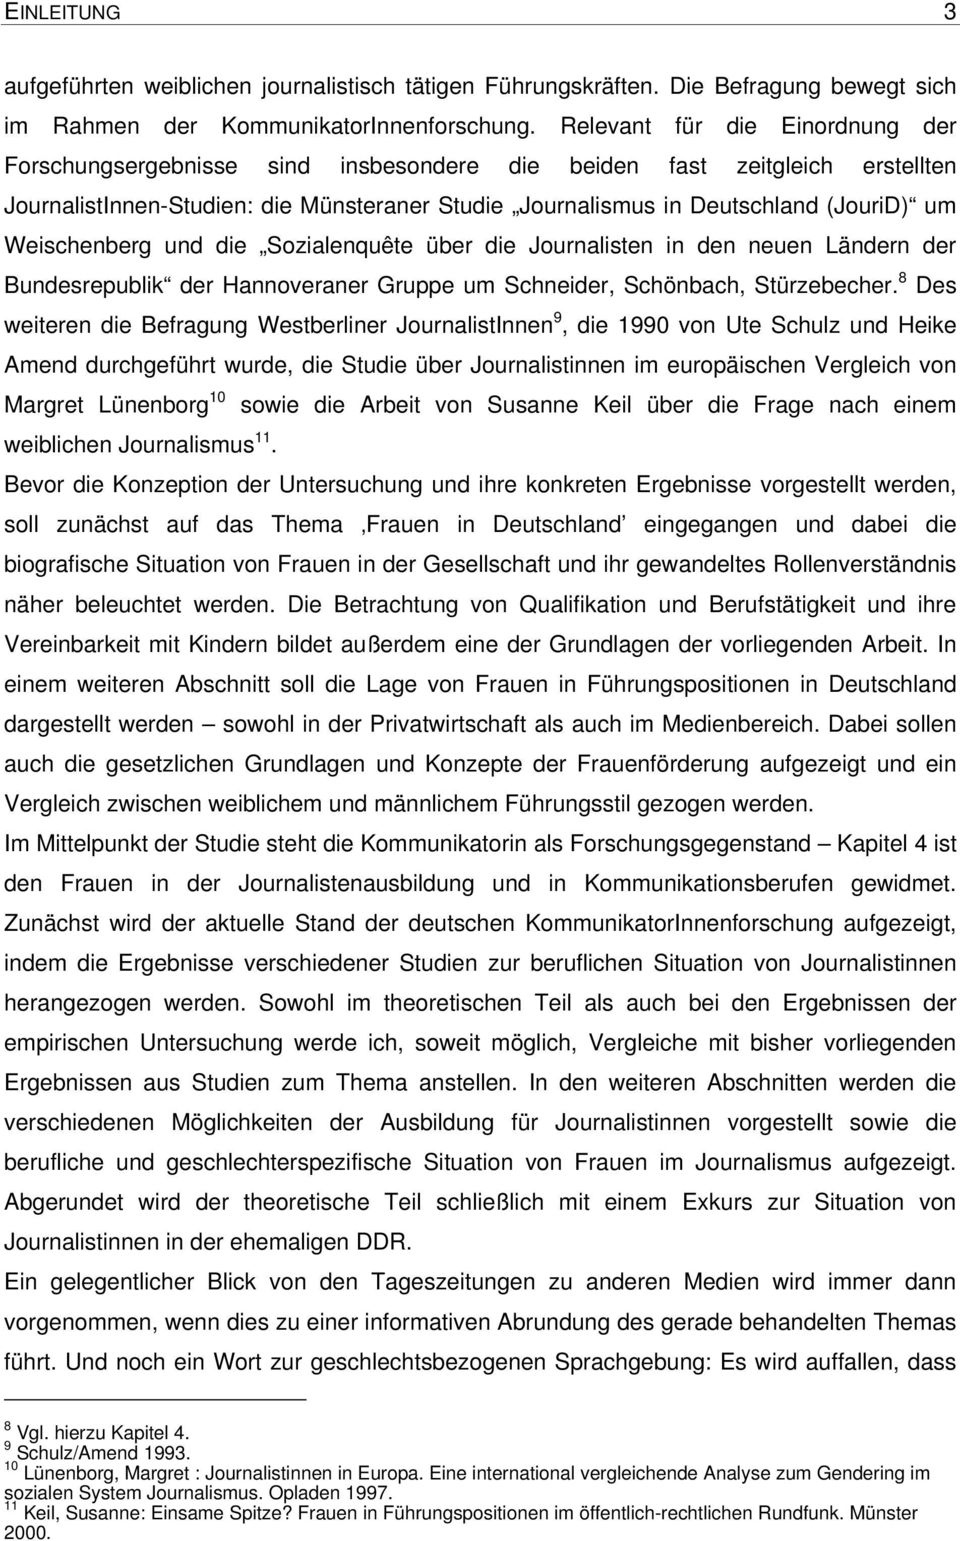 Weischenberg und die Sozialenquête über die Journalisten in den neuen Ländern der Bundesrepublik der Hannoveraner Gruppe um Schneider, Schönbach, Stürzebecher.